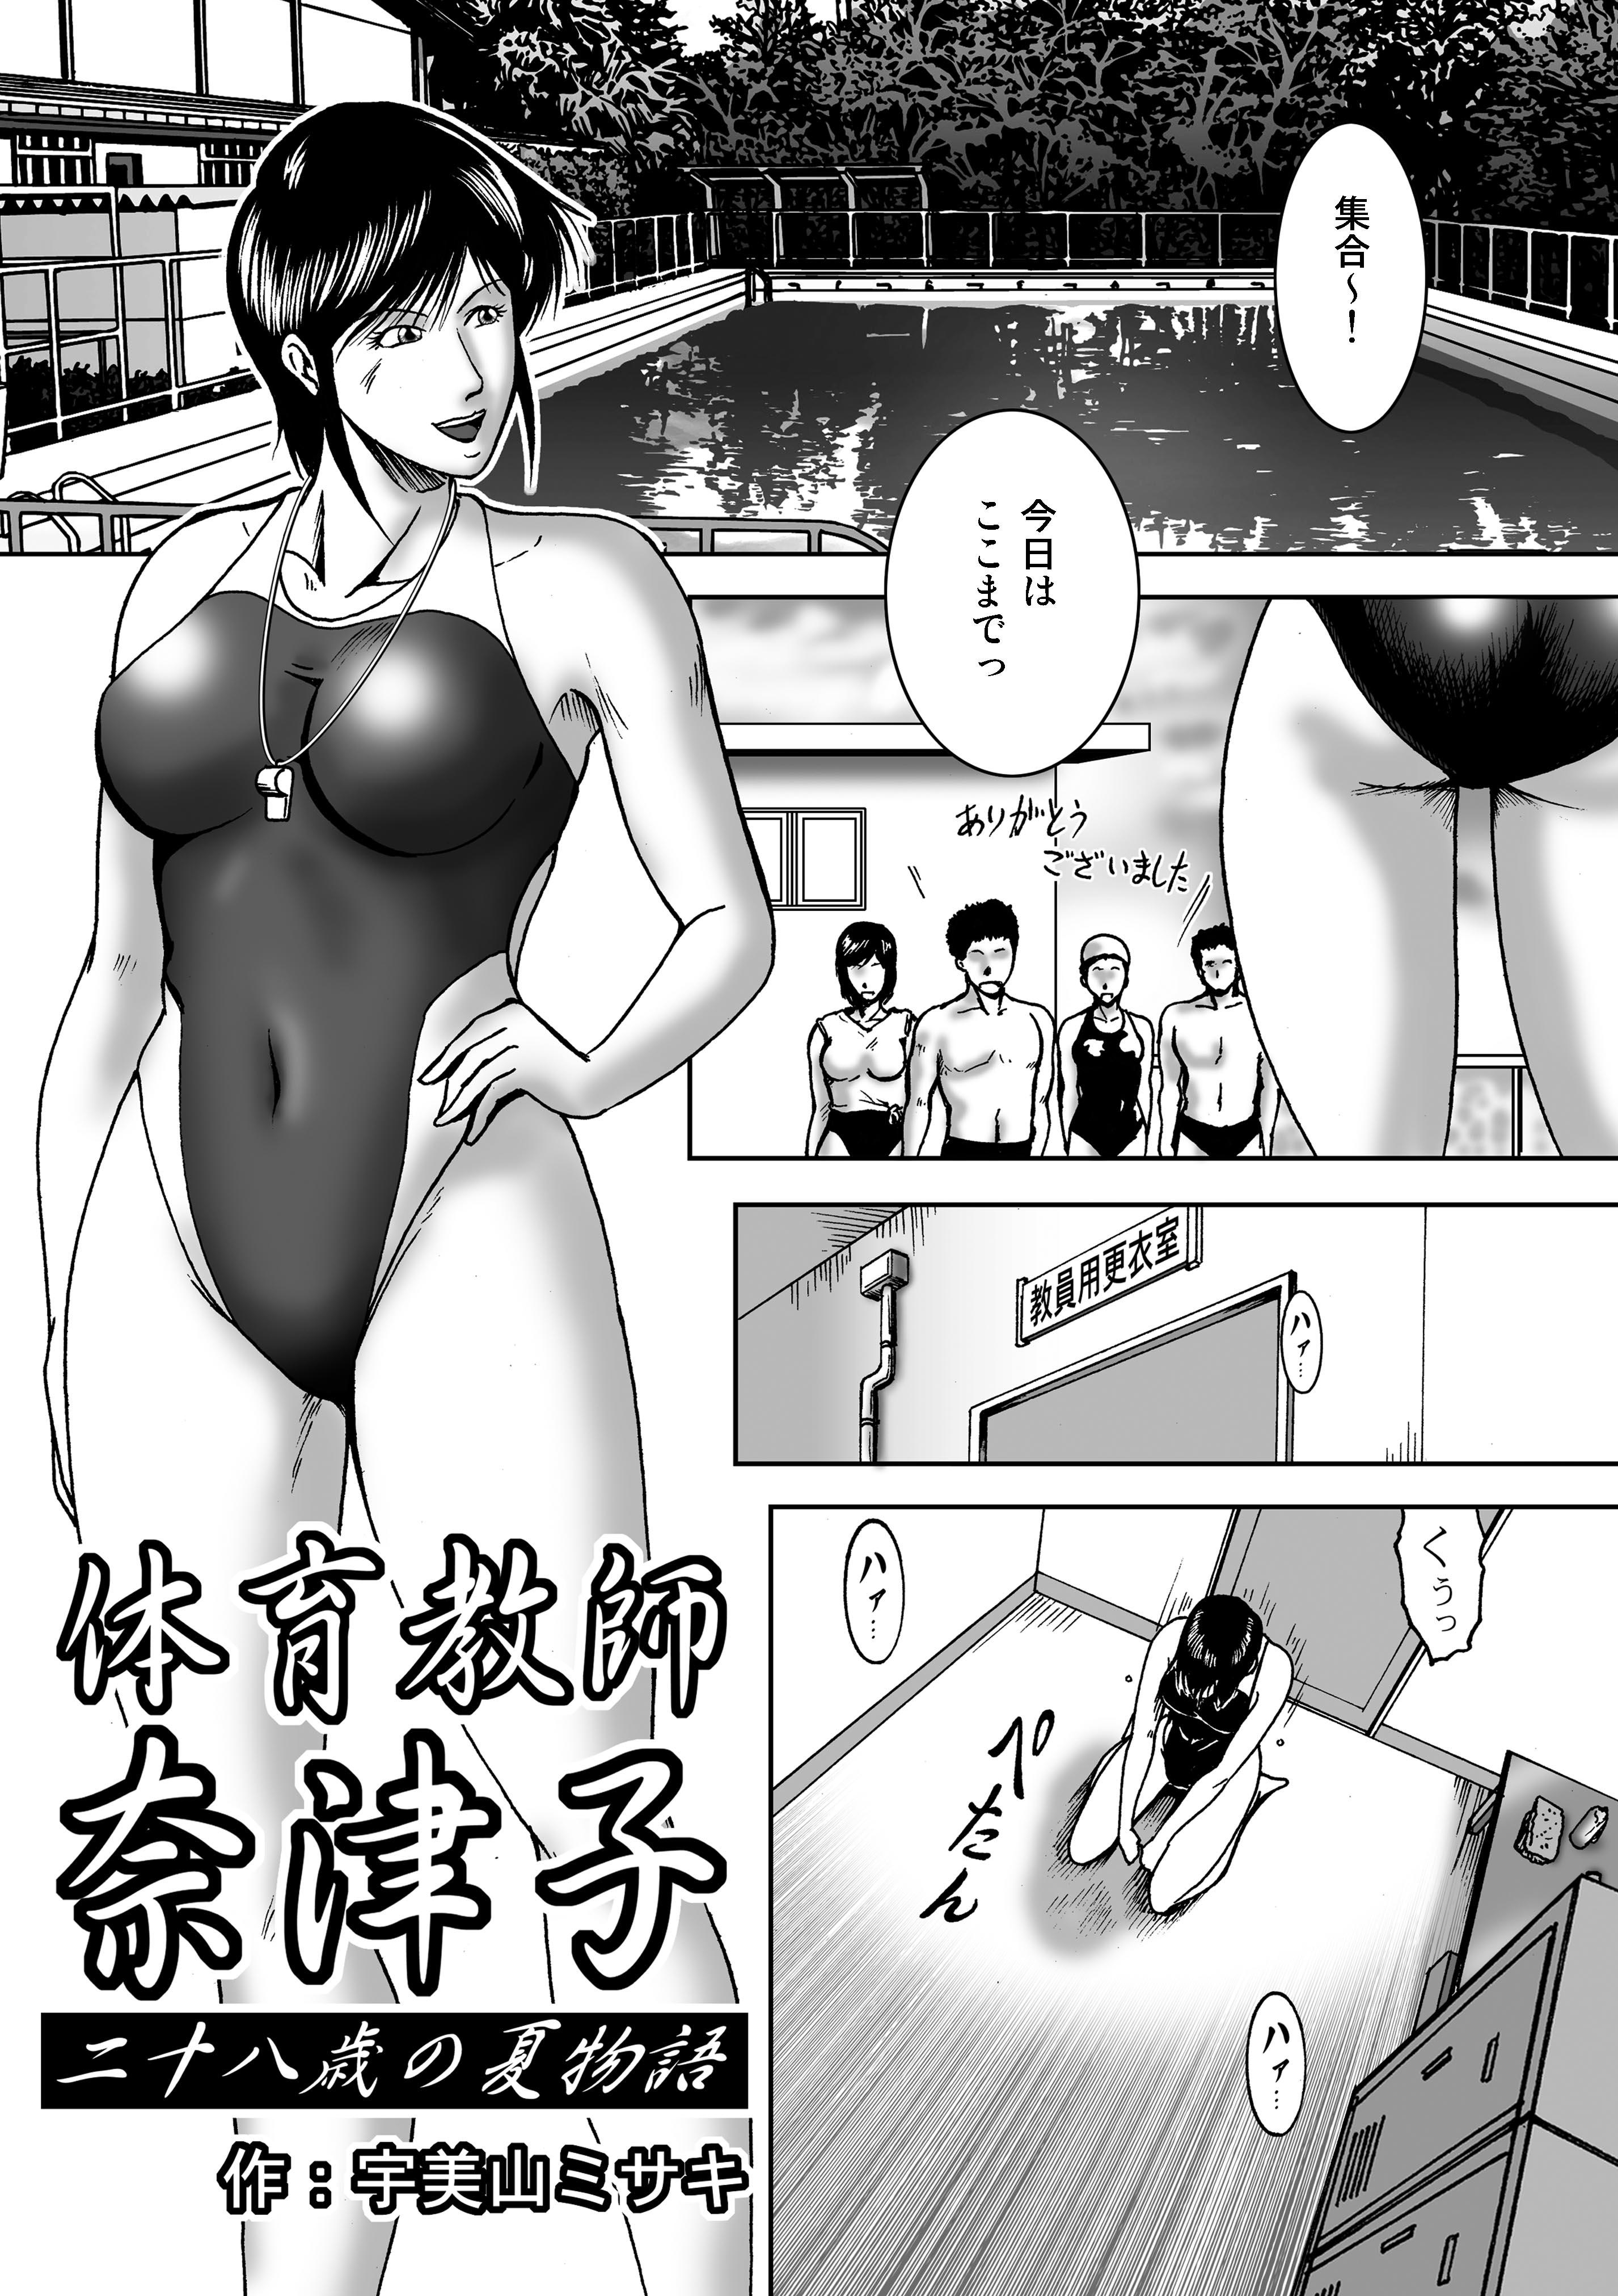 Swim Coach Natsuko - Age 28 4